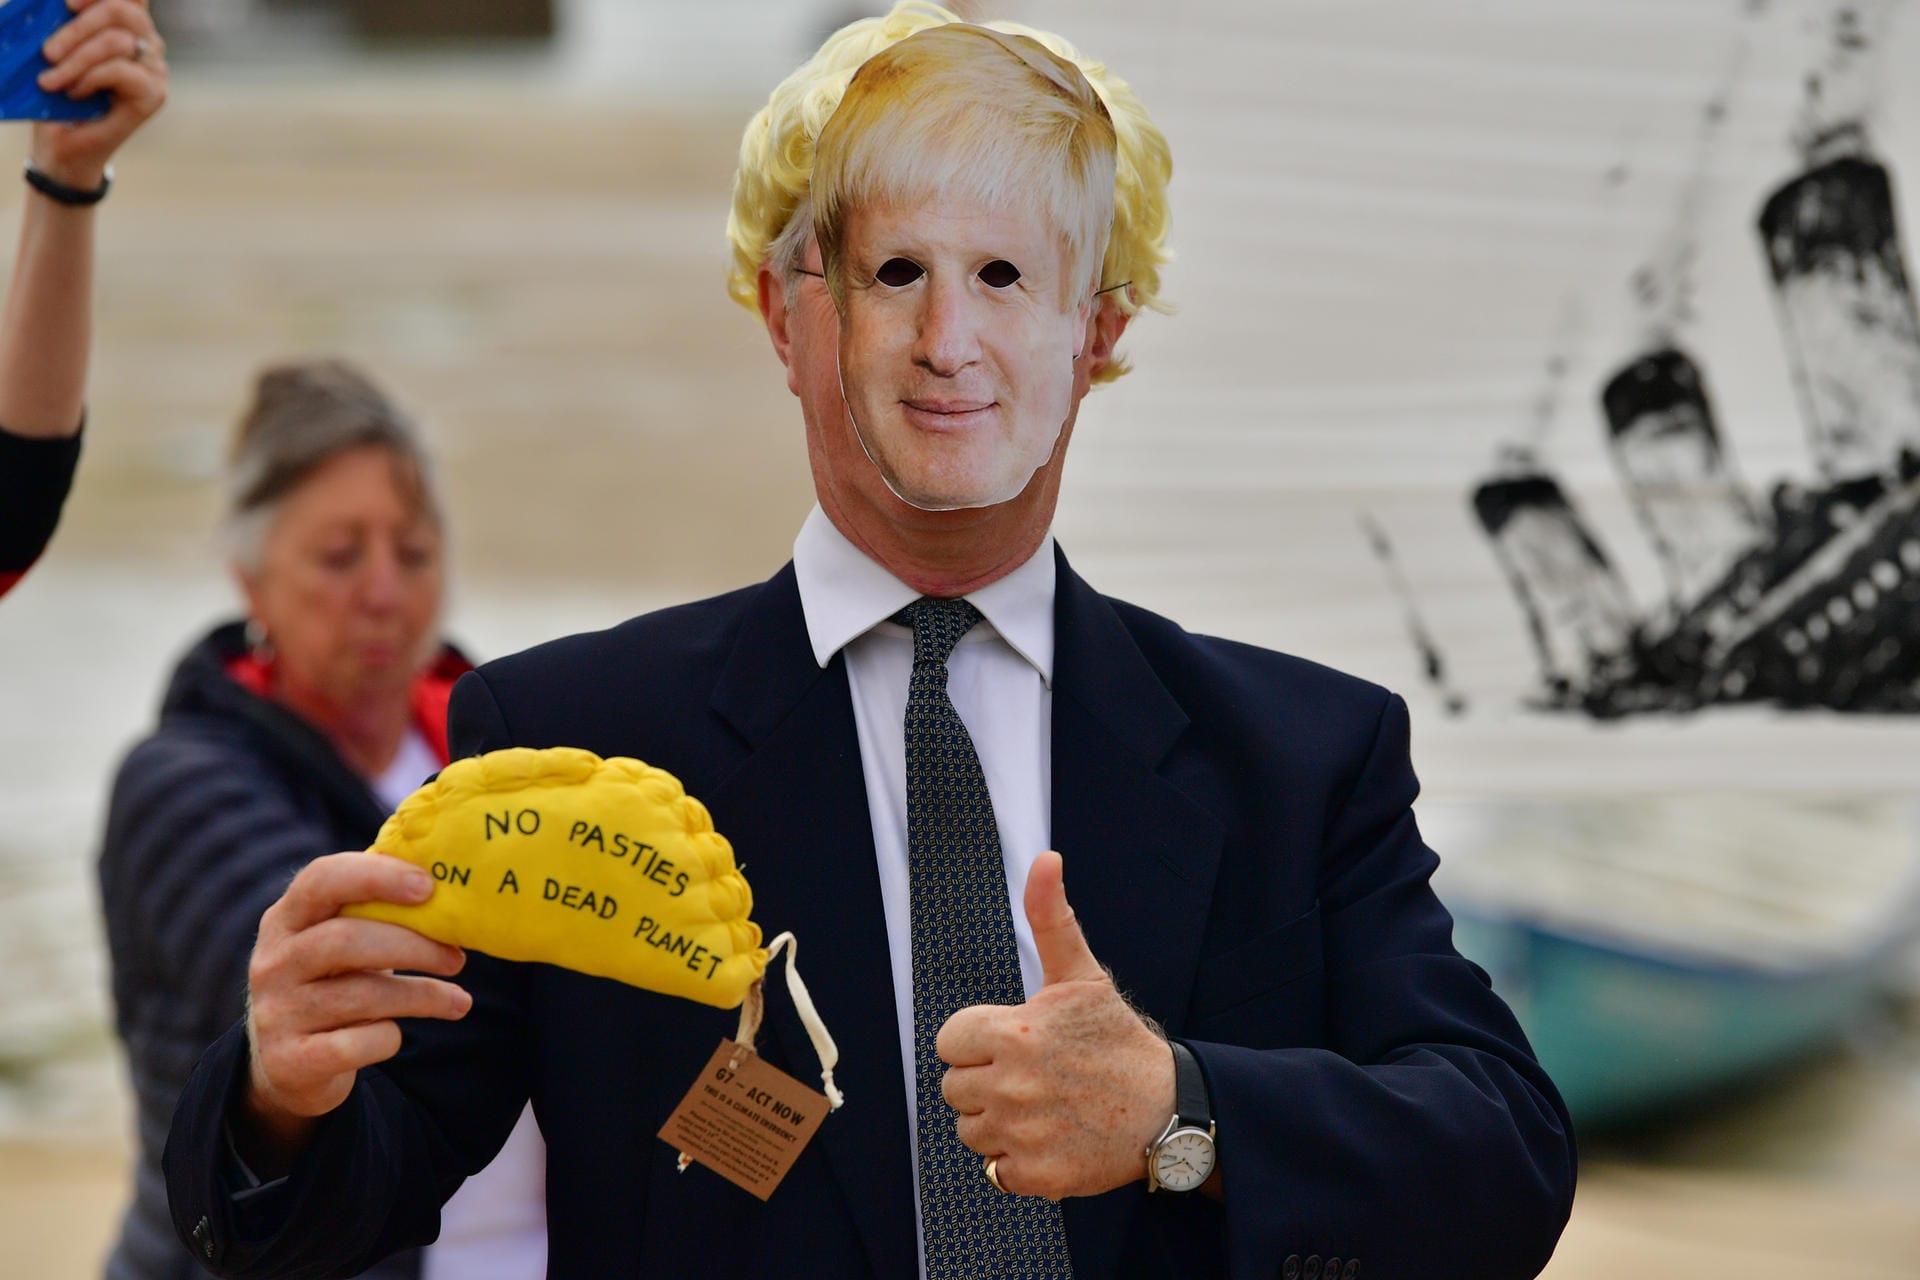 Ein Aktivist von Extinction Rebellion trägt eine Pappmaske mit dem Conterfeit von Großbritanniens Premierminister Boris Johnson. In der Hand hält er eine "Protest-Pastete". Gefüllte Teigtaschen sind in Cornwall eine regionale Spezialität, die genähte Variante trägt den Spruch: "Keine Pasteten auf einem toten Planeten".